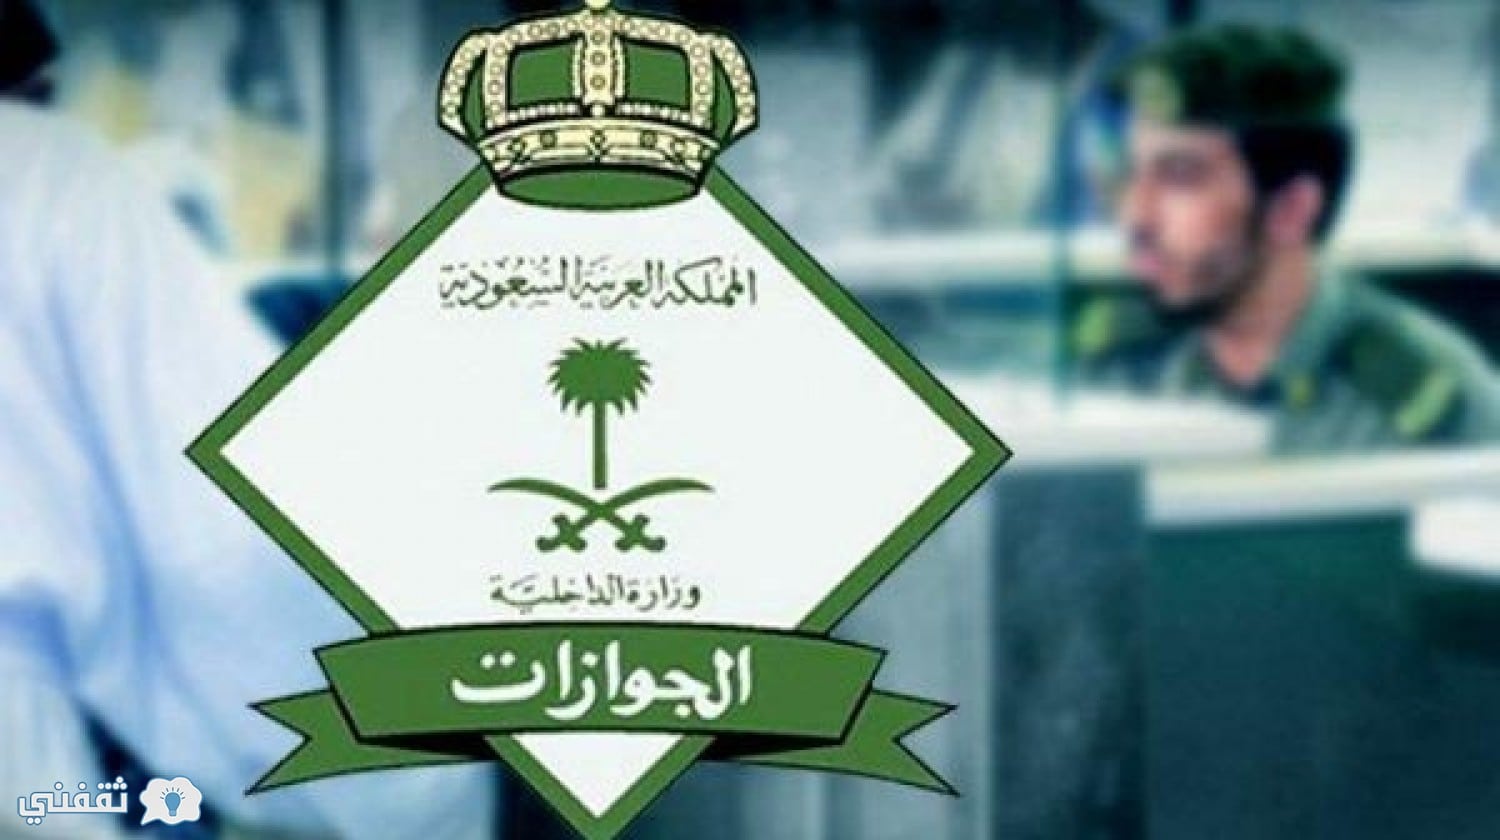 شروط جديدة يتم تطبيقها علي أي وافد بالمملكة العربية السعودية لتجديد الإقامة قبل بدء عام 2019